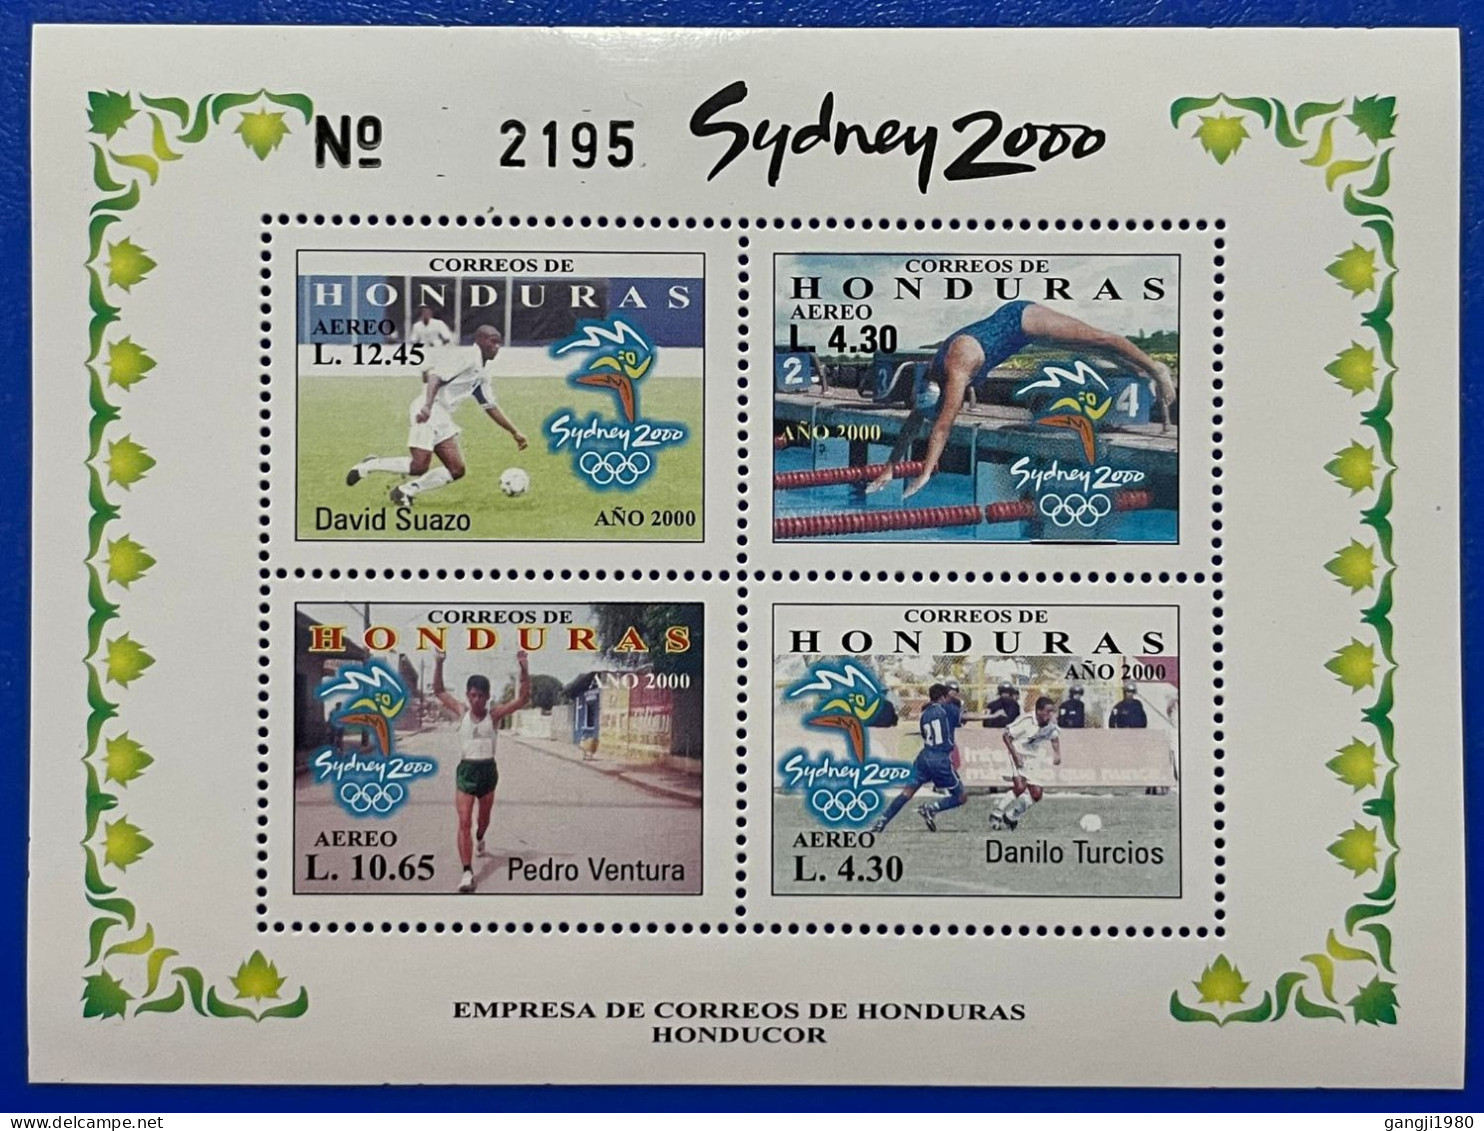 HONDURAS 2000 SIDNEY OLYMPICS S/S CV$28.00 MNH SPORTS, FOOTBALL, SOCCER - Honduras